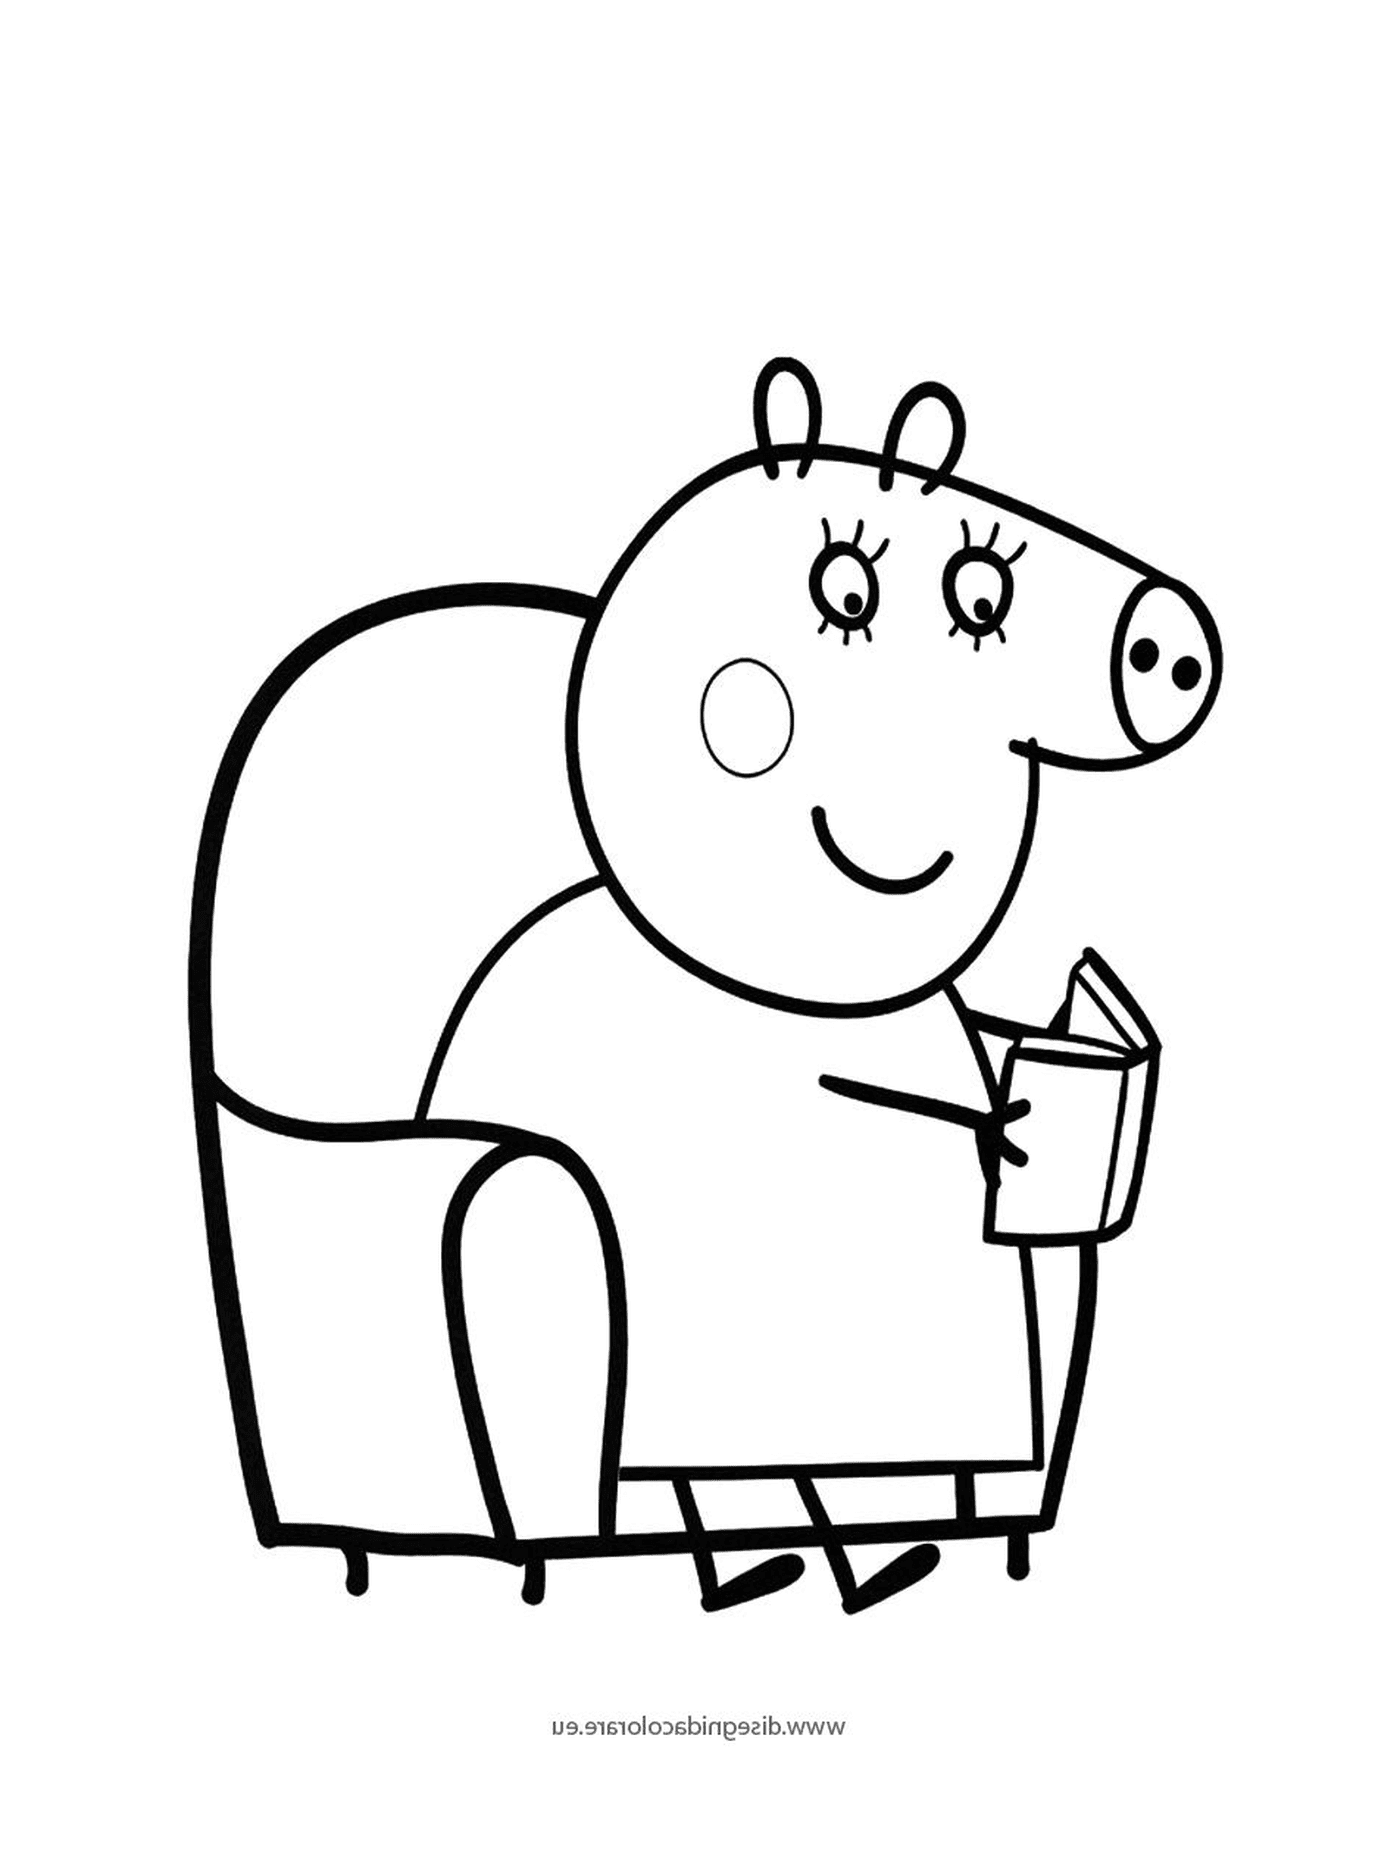  एक सूअर एक कुर्सी पर बैठा हुआ किताब 